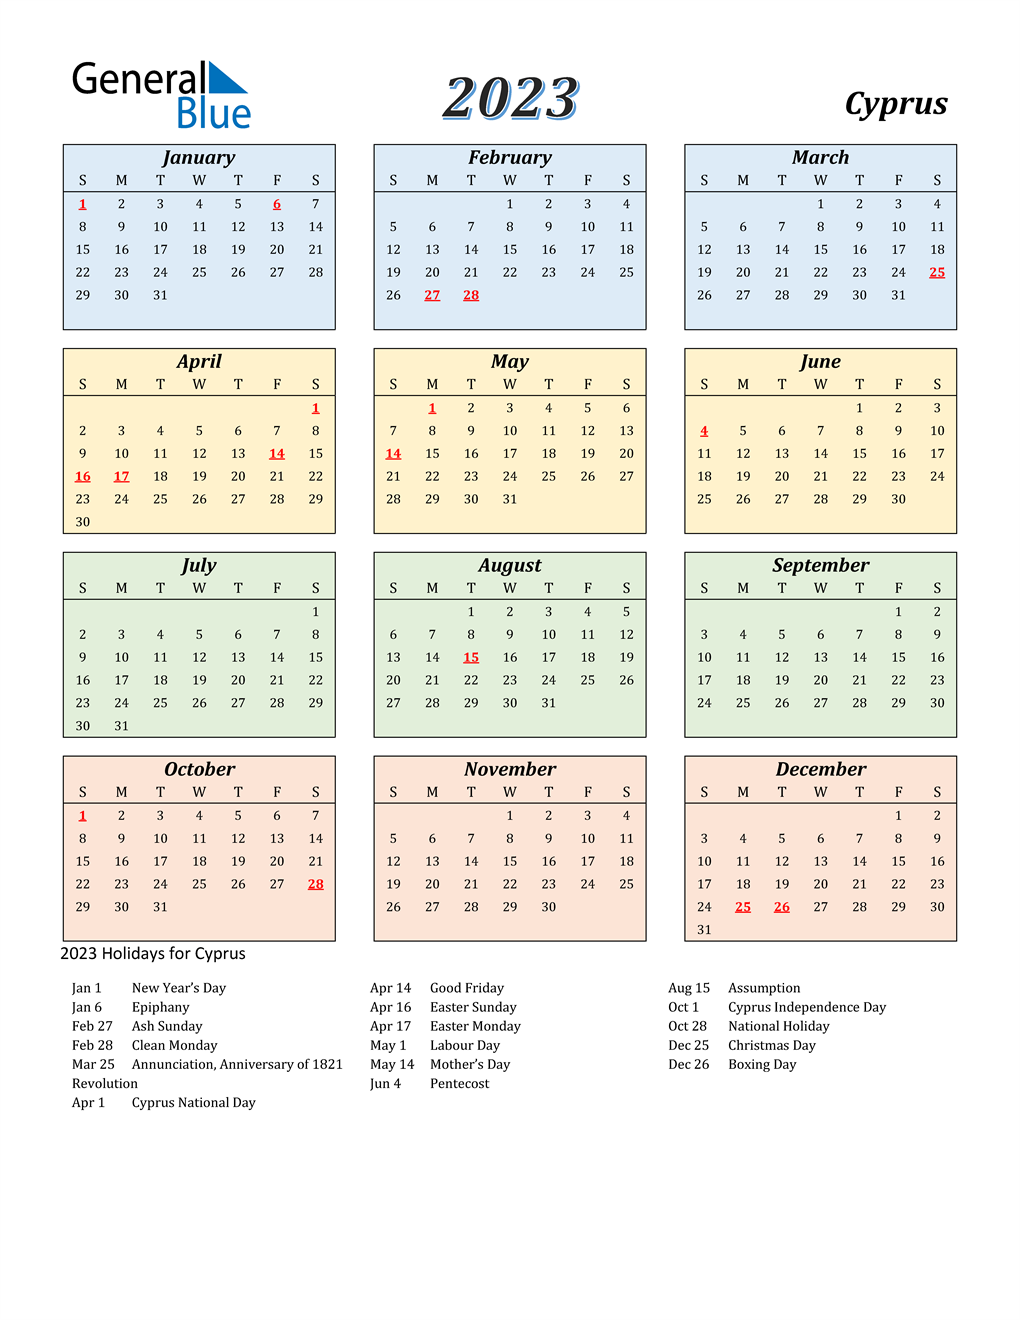 uae public holidays 2023 2023 calendar gambaran 2023 united arab